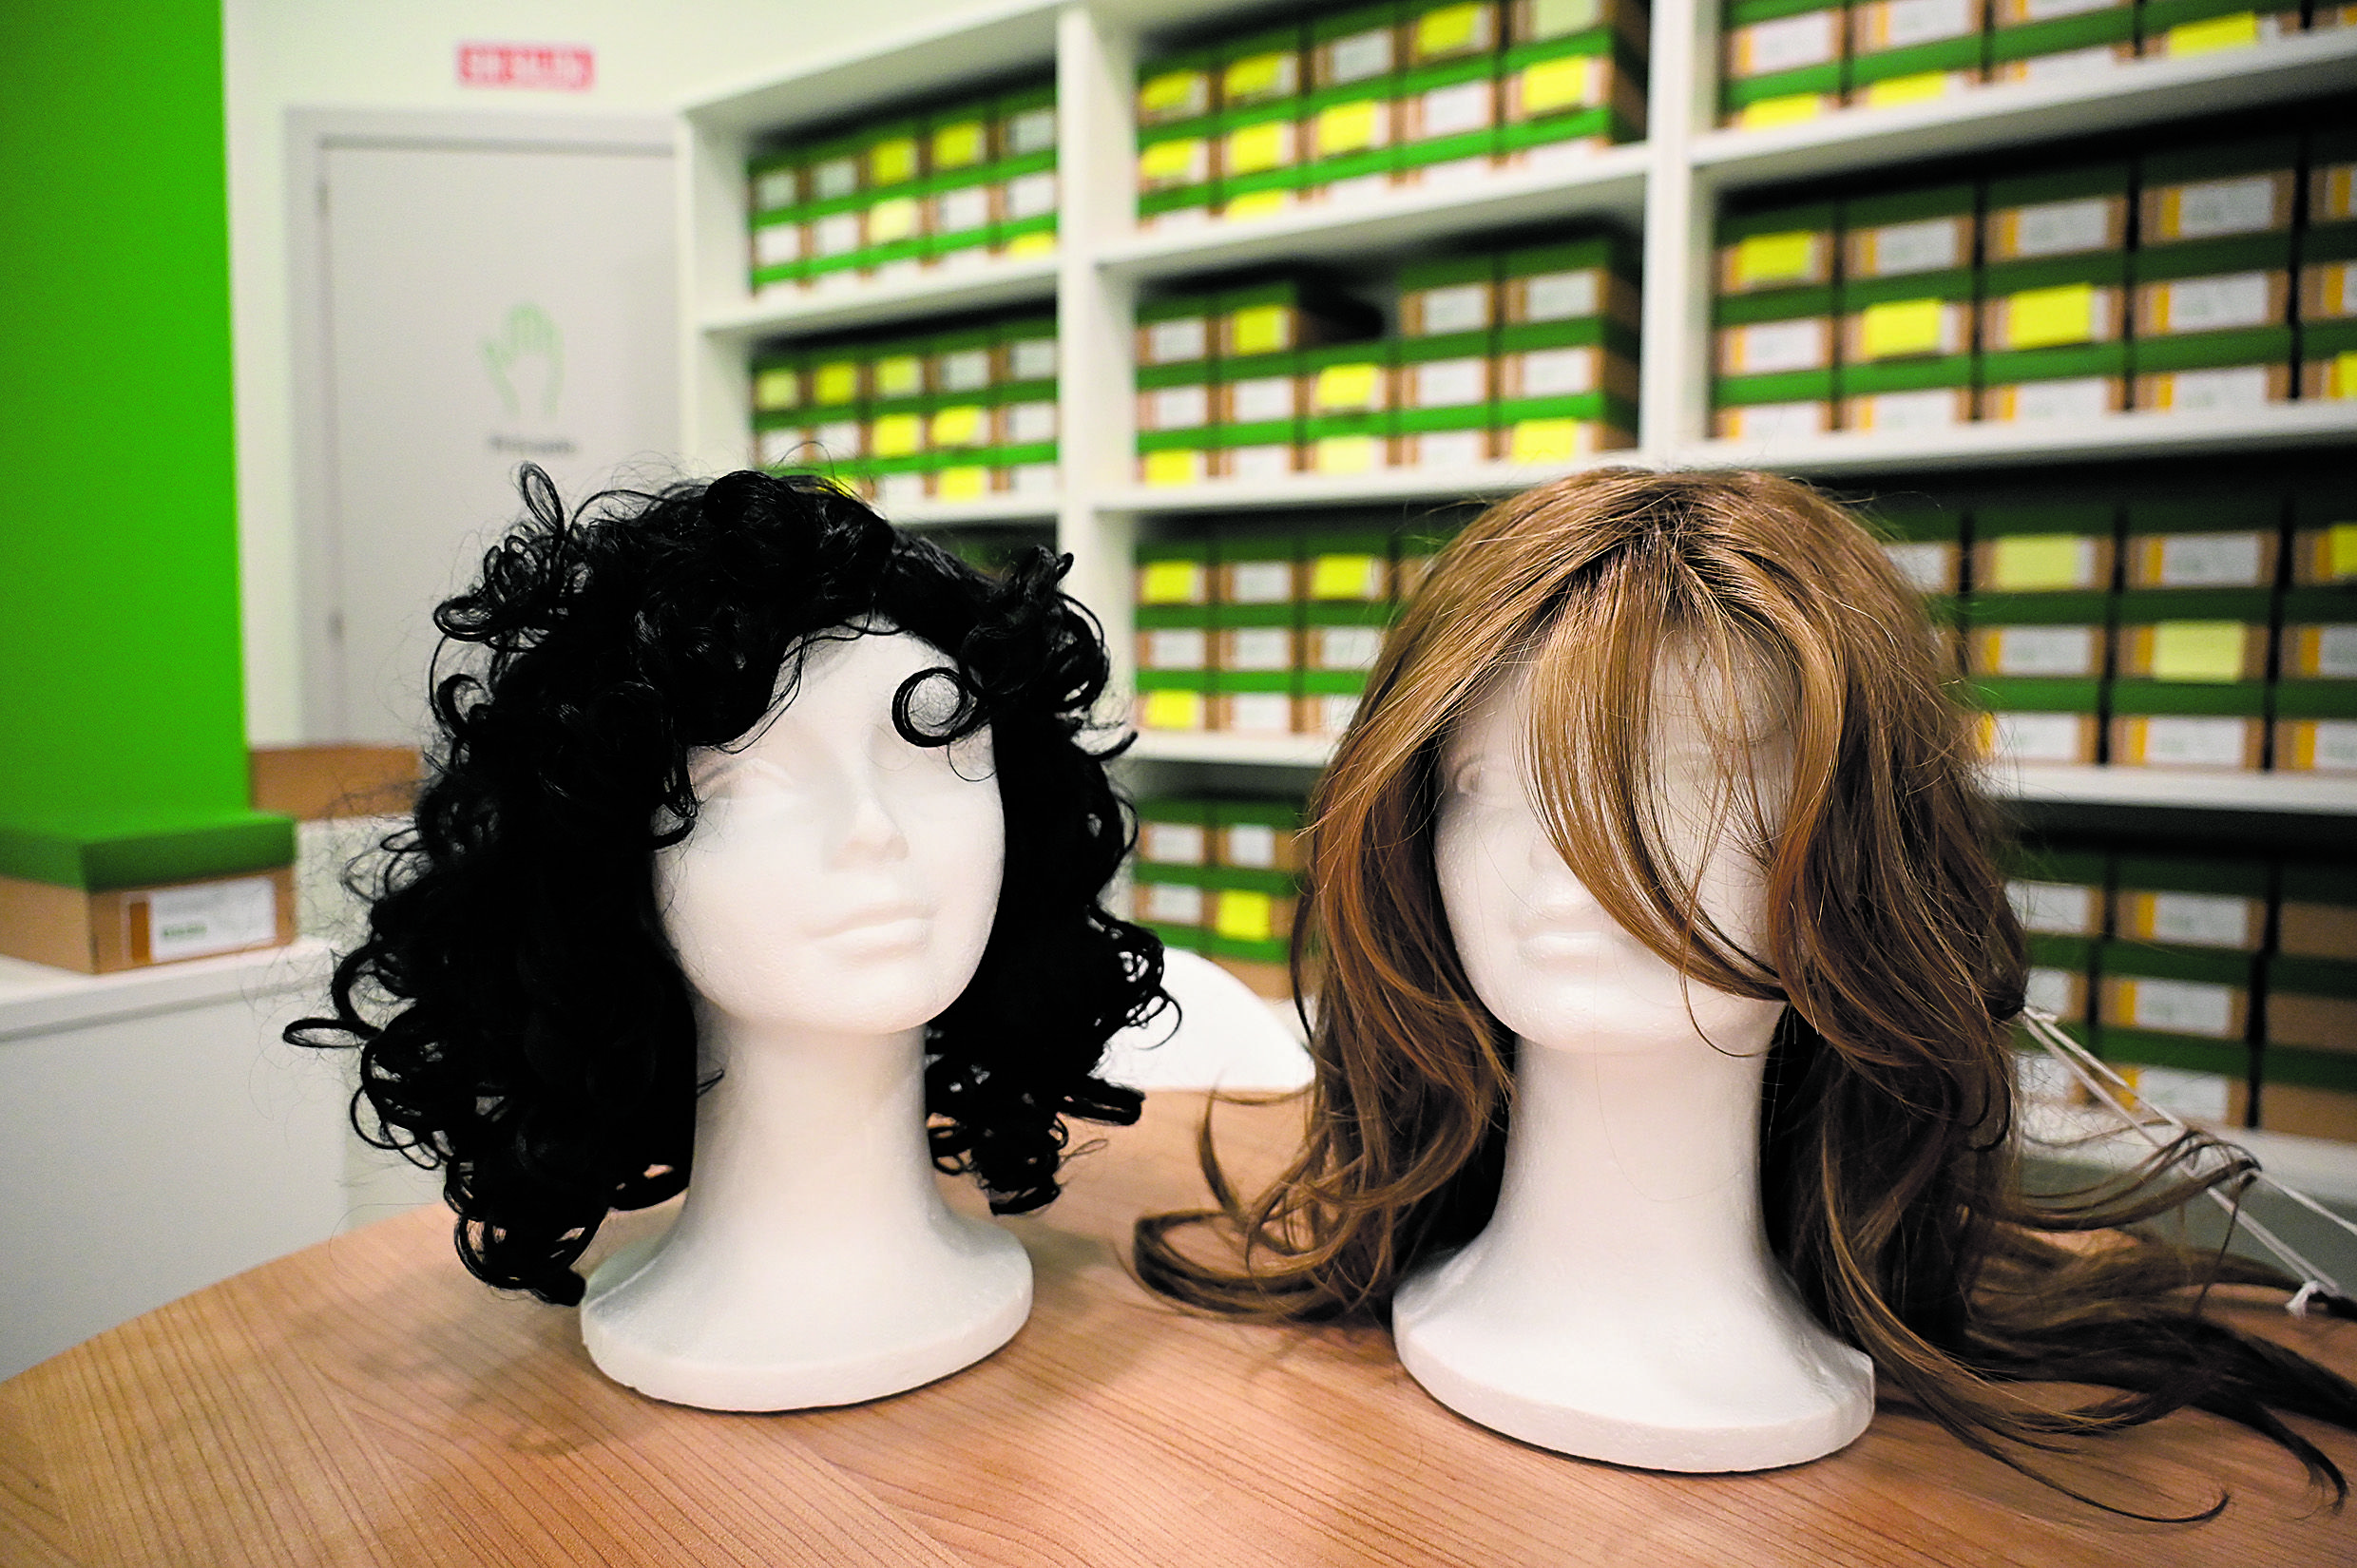 El banco tiene más de 150 pelucas disponibles en cortes y tonalidades de pelo diferentes. | SAÚL ARÉN